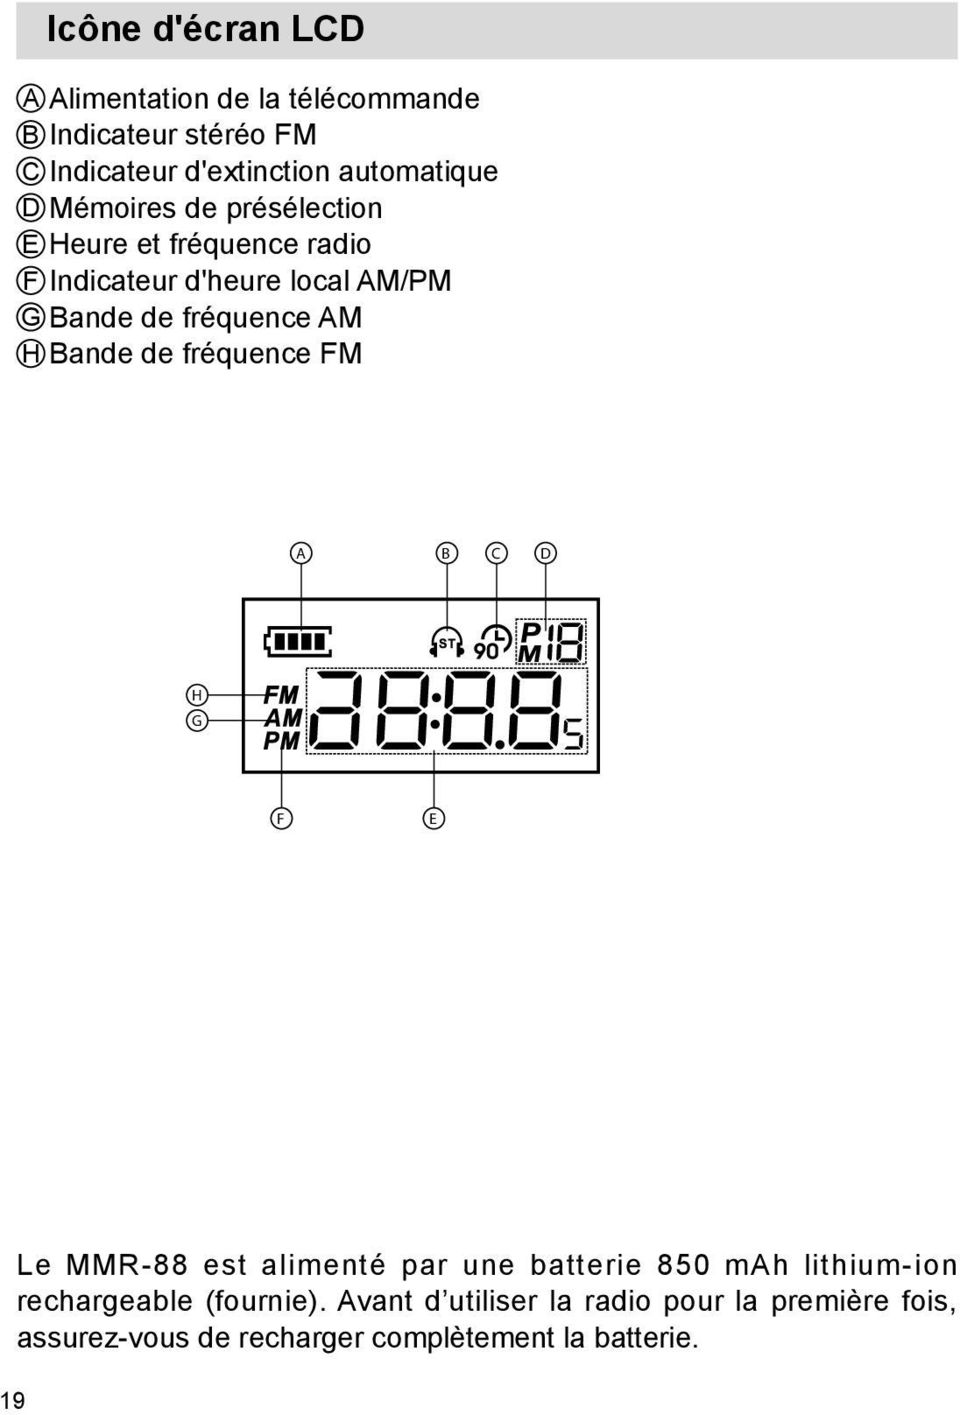 Bande de fréquence FM A B C D H G F E Le MMR-88 est alimenté par une batterie 850 mah lithium-ion rechargeable